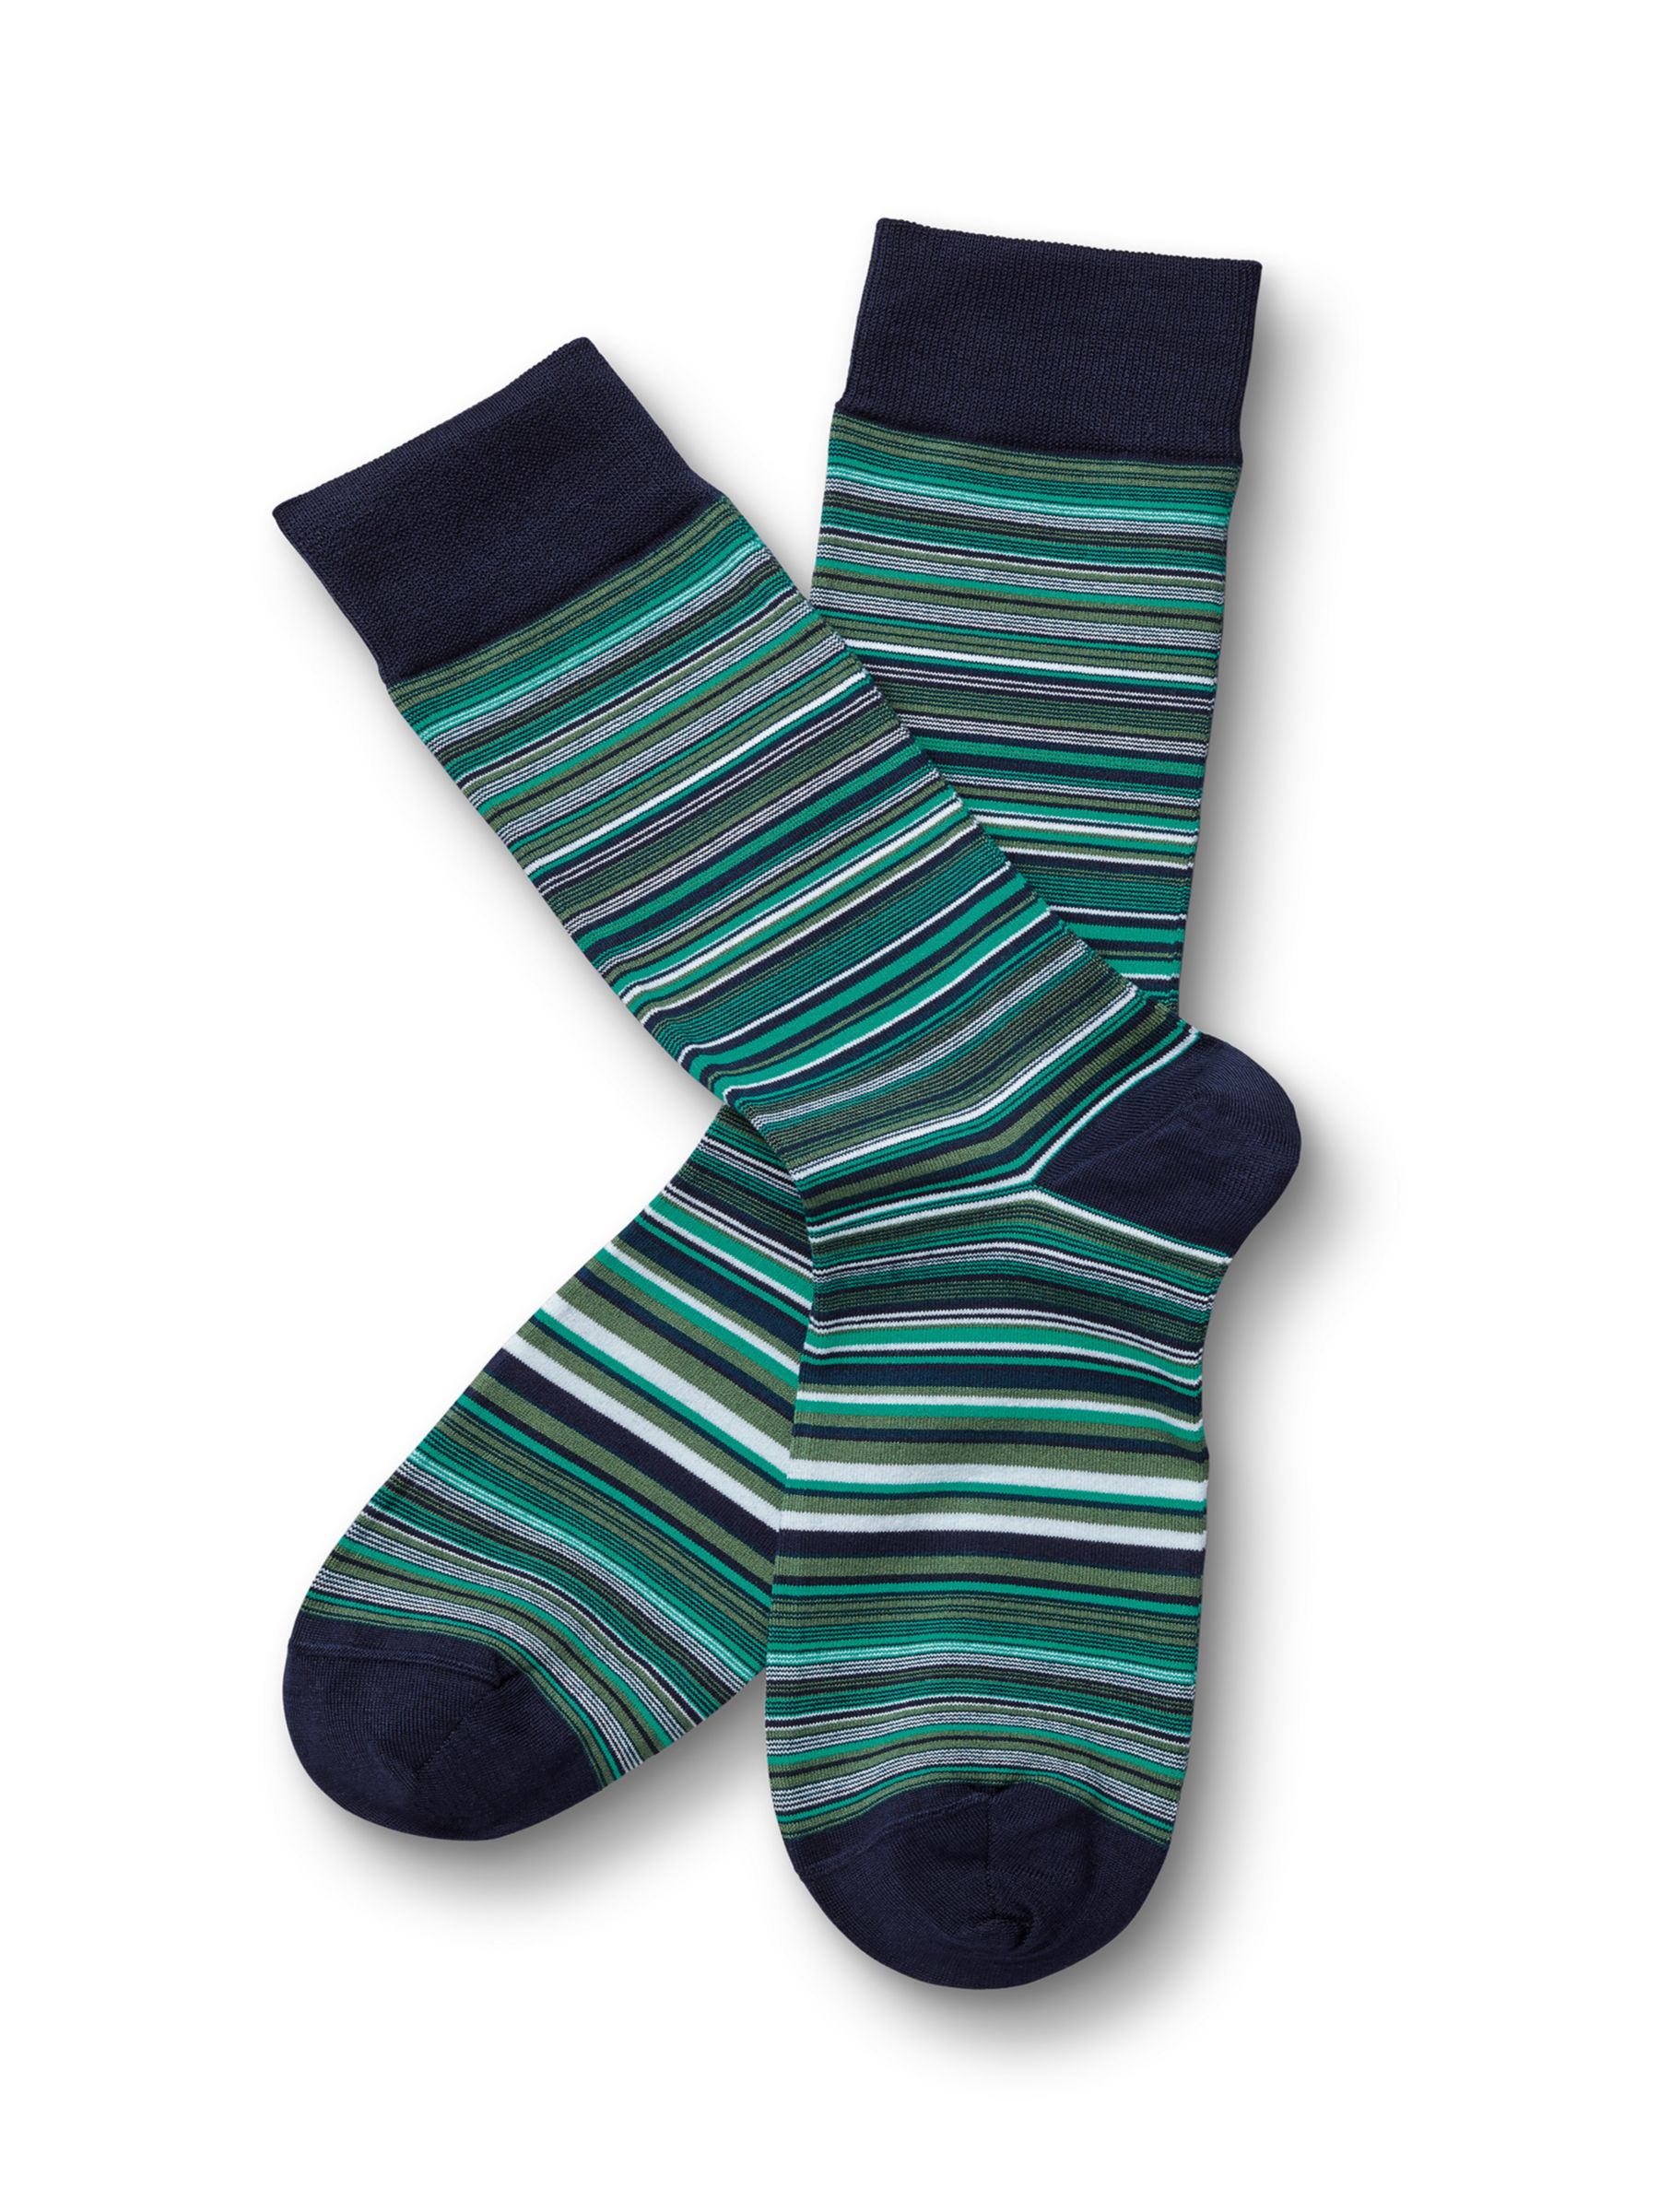 Buy Charles Tyrwhitt Stripe Socks Online at johnlewis.com